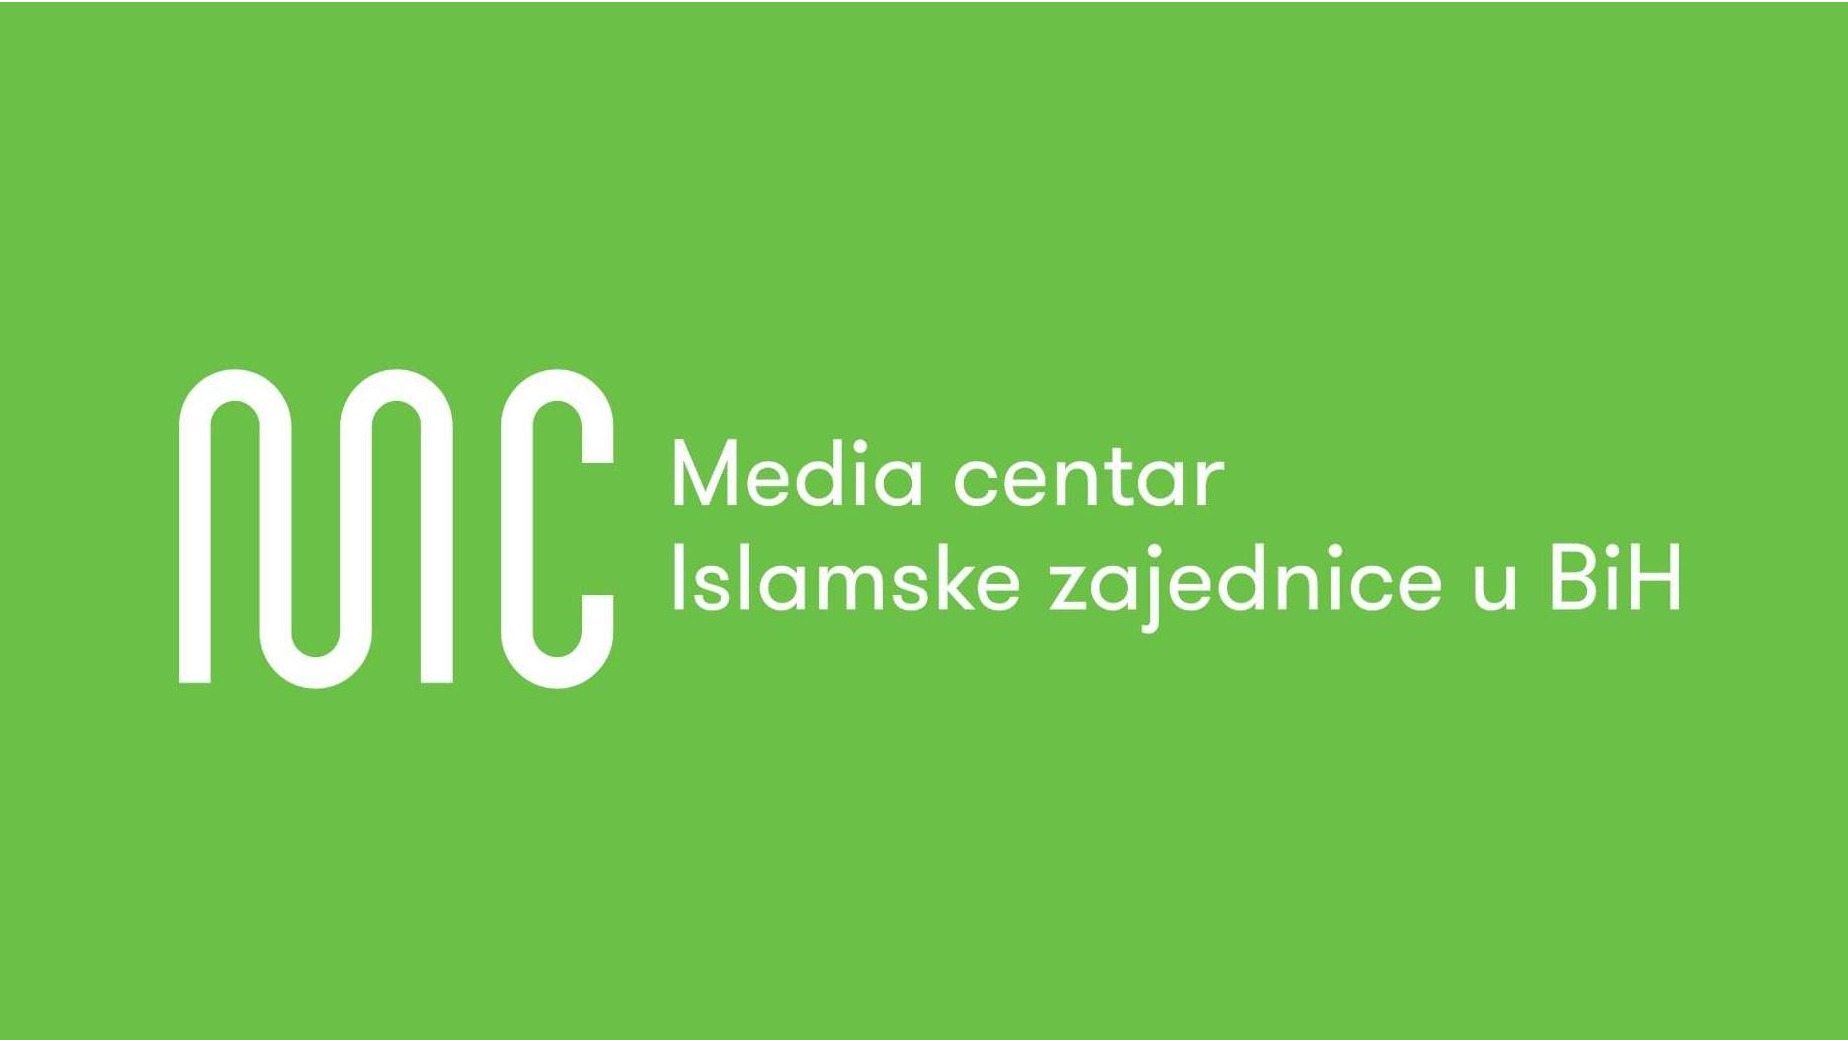 Konkurs za poziciju lektora u Media centru Islamske zajednice u BiH